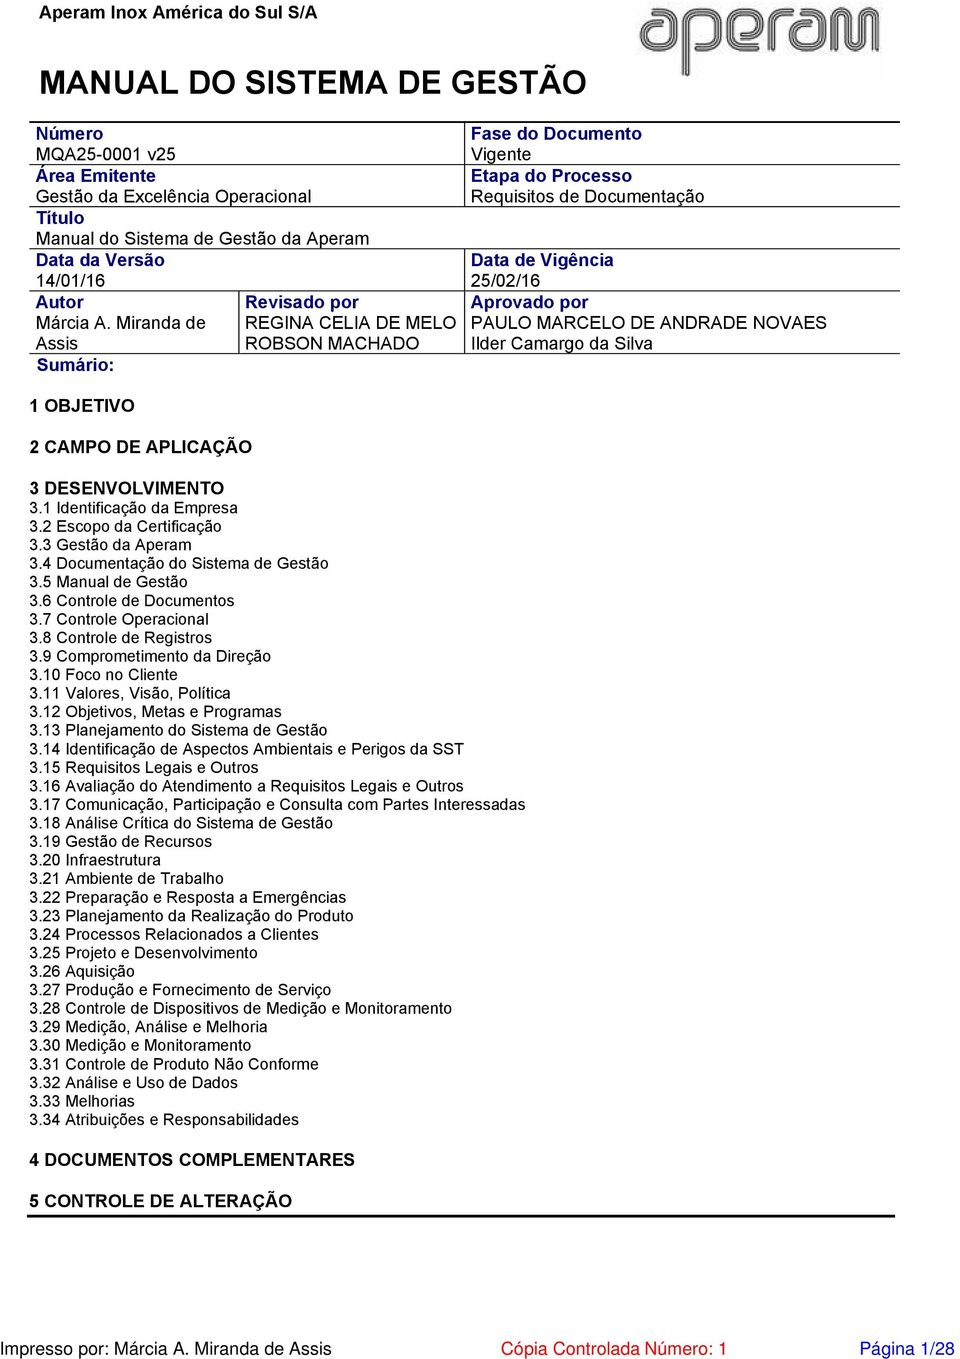 Miranda de Assis Sumário: Revisado por REGINA CELIA DE MELO ROBSON MACHADO Fase do Documento Vigente Etapa do Processo Requisitos de Documentação Data de Vigência 25/02/16 Aprovado por PAULO MARCELO